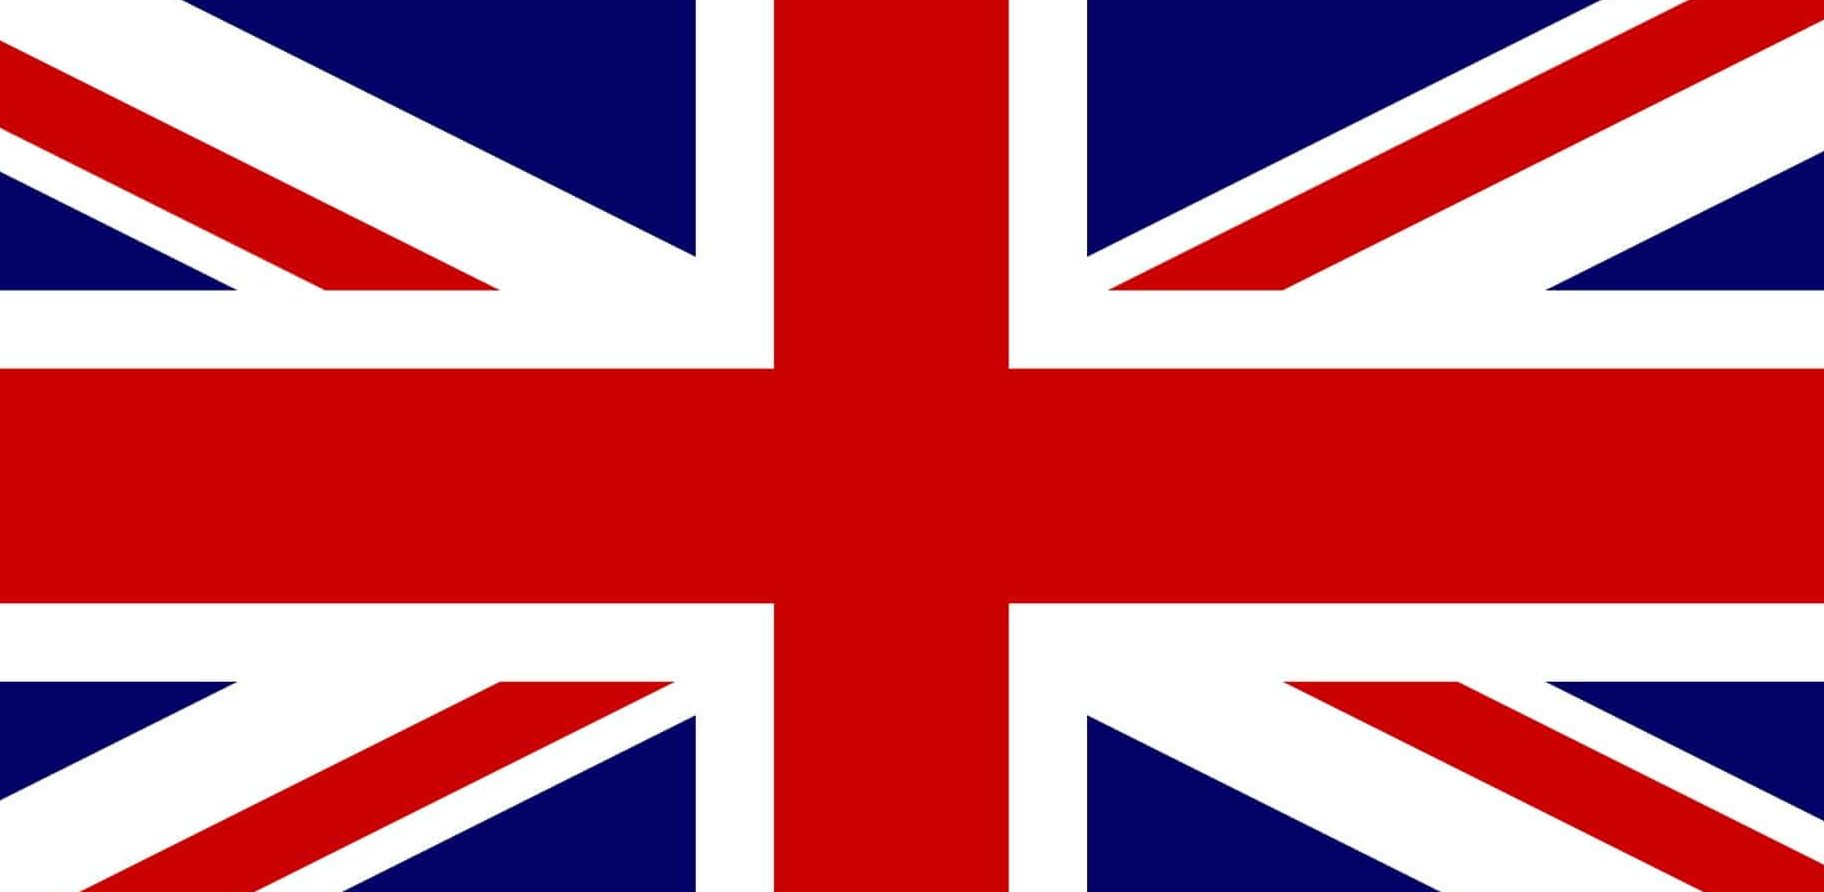 ธงประจำชาติอังกฤษ - ยูเนี่ยนแจ็ค